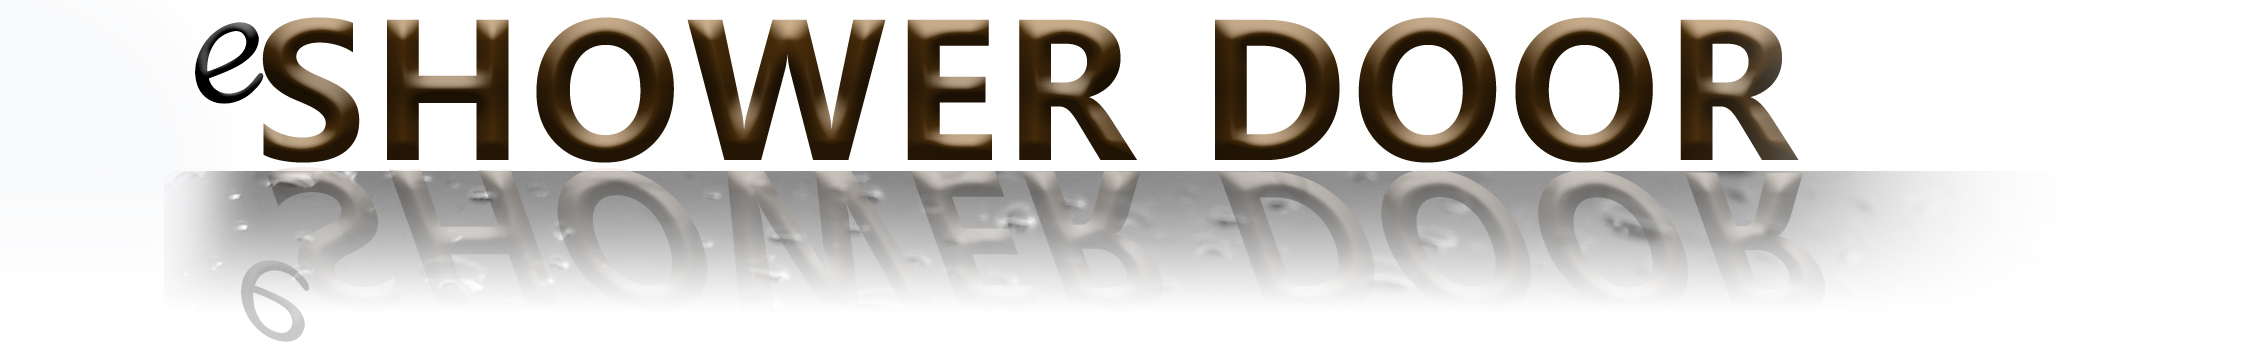 eShowerDoor logo